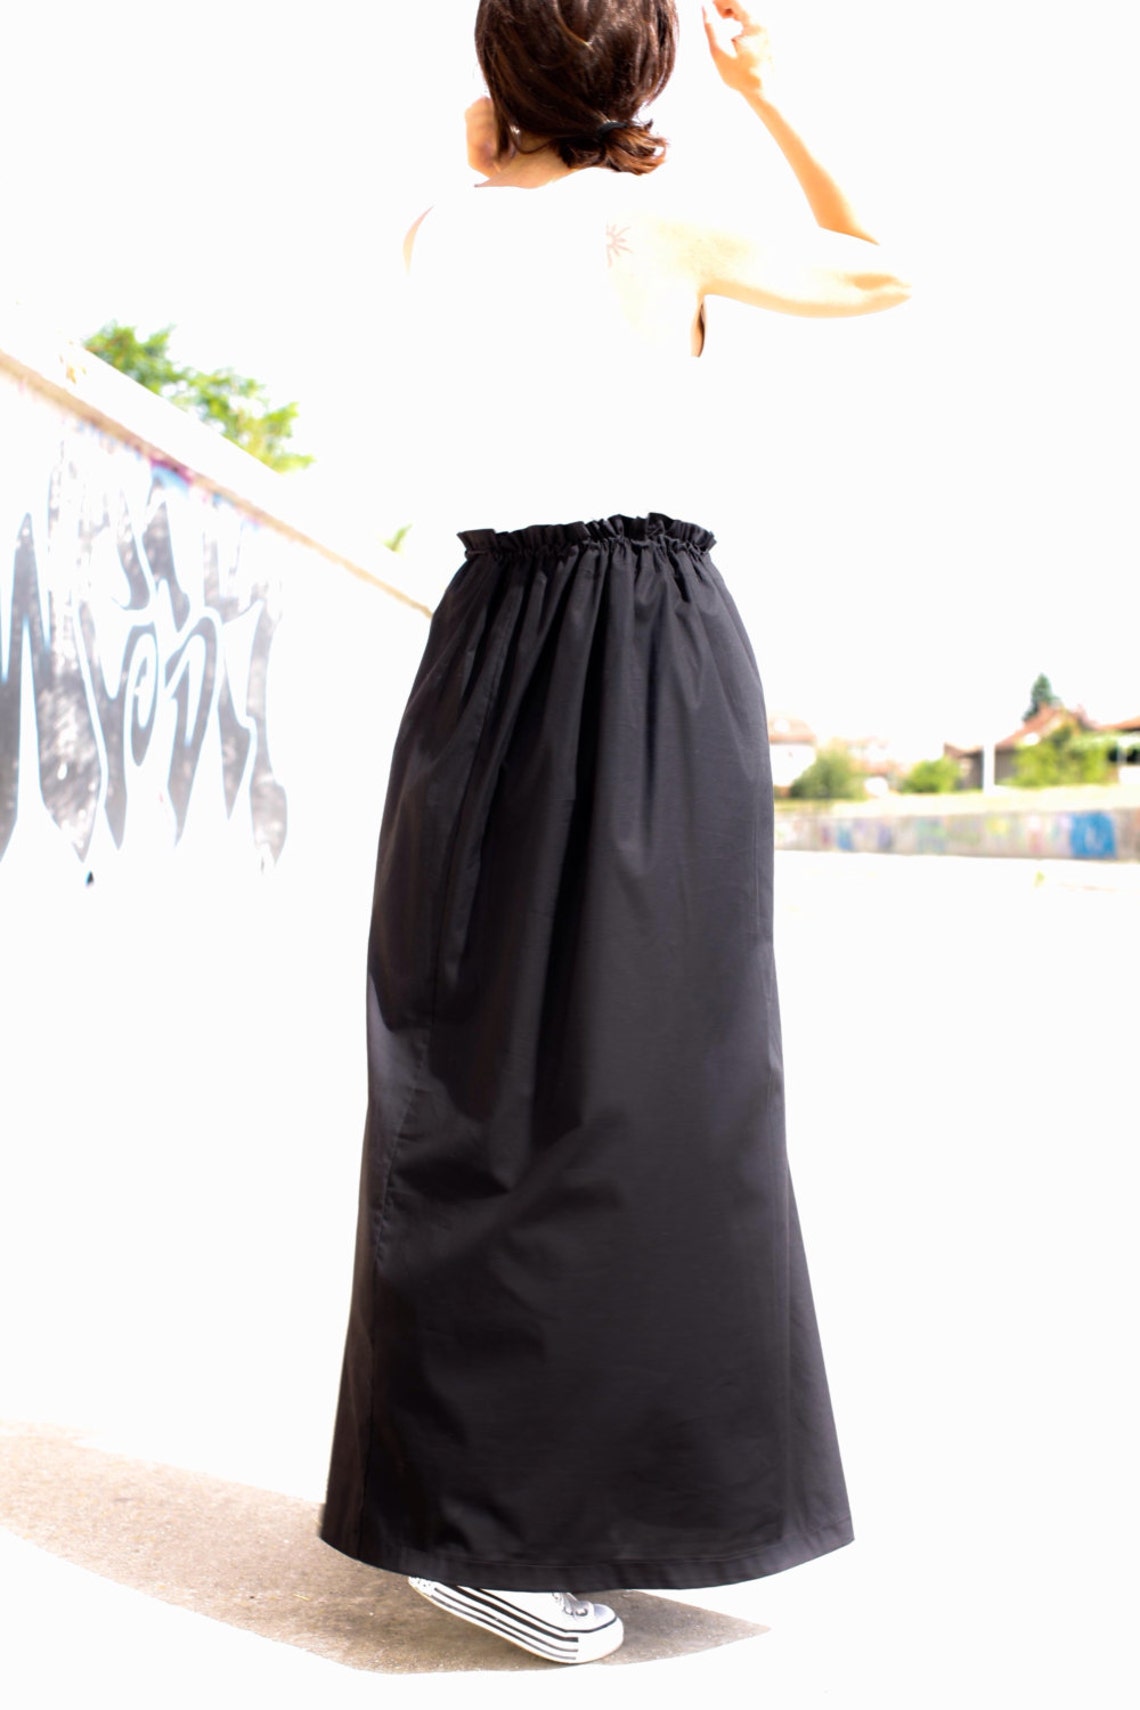 Black Skirt Maxi Skirt Long Skirt Cotton Skirt Casual - Etsy